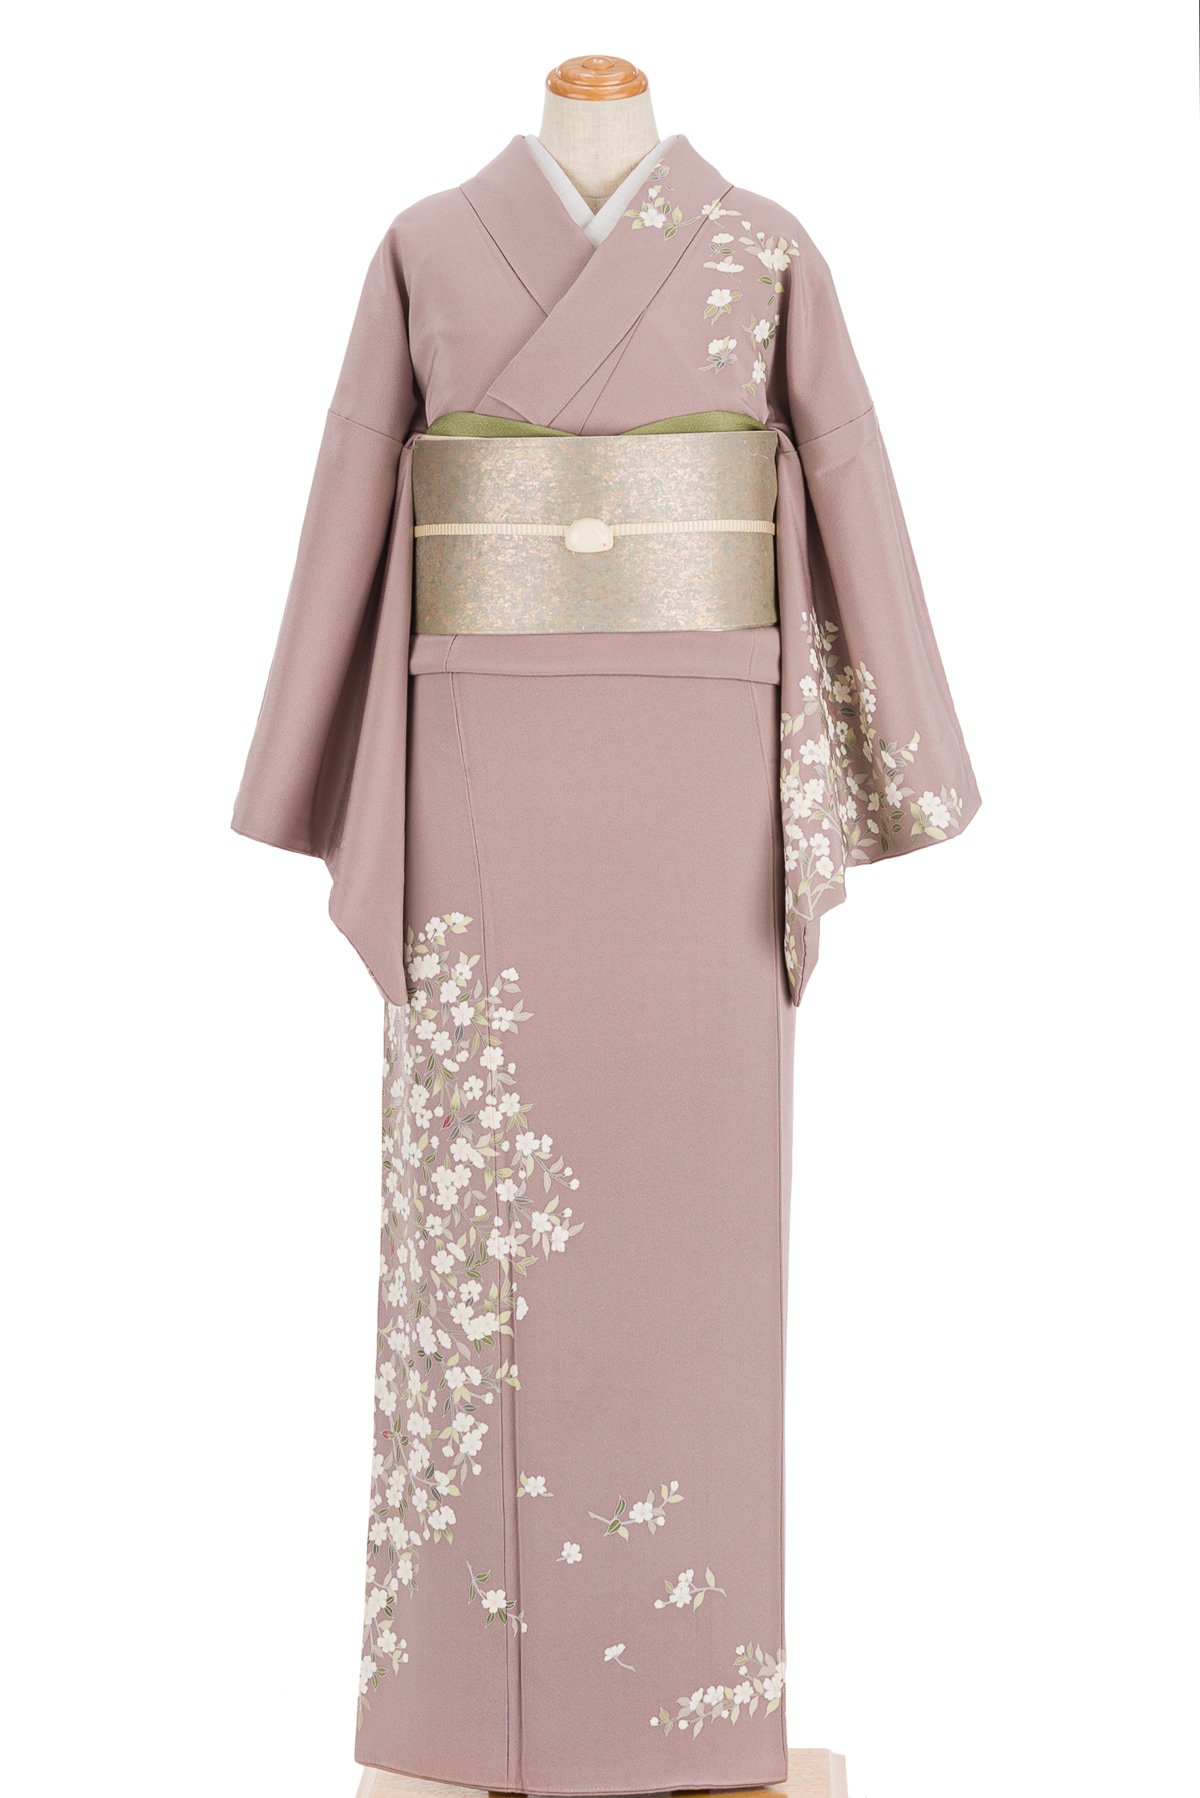 訪問着 一つ紋 桜 作家物 - からん::アンティーク着物・リサイクル着物